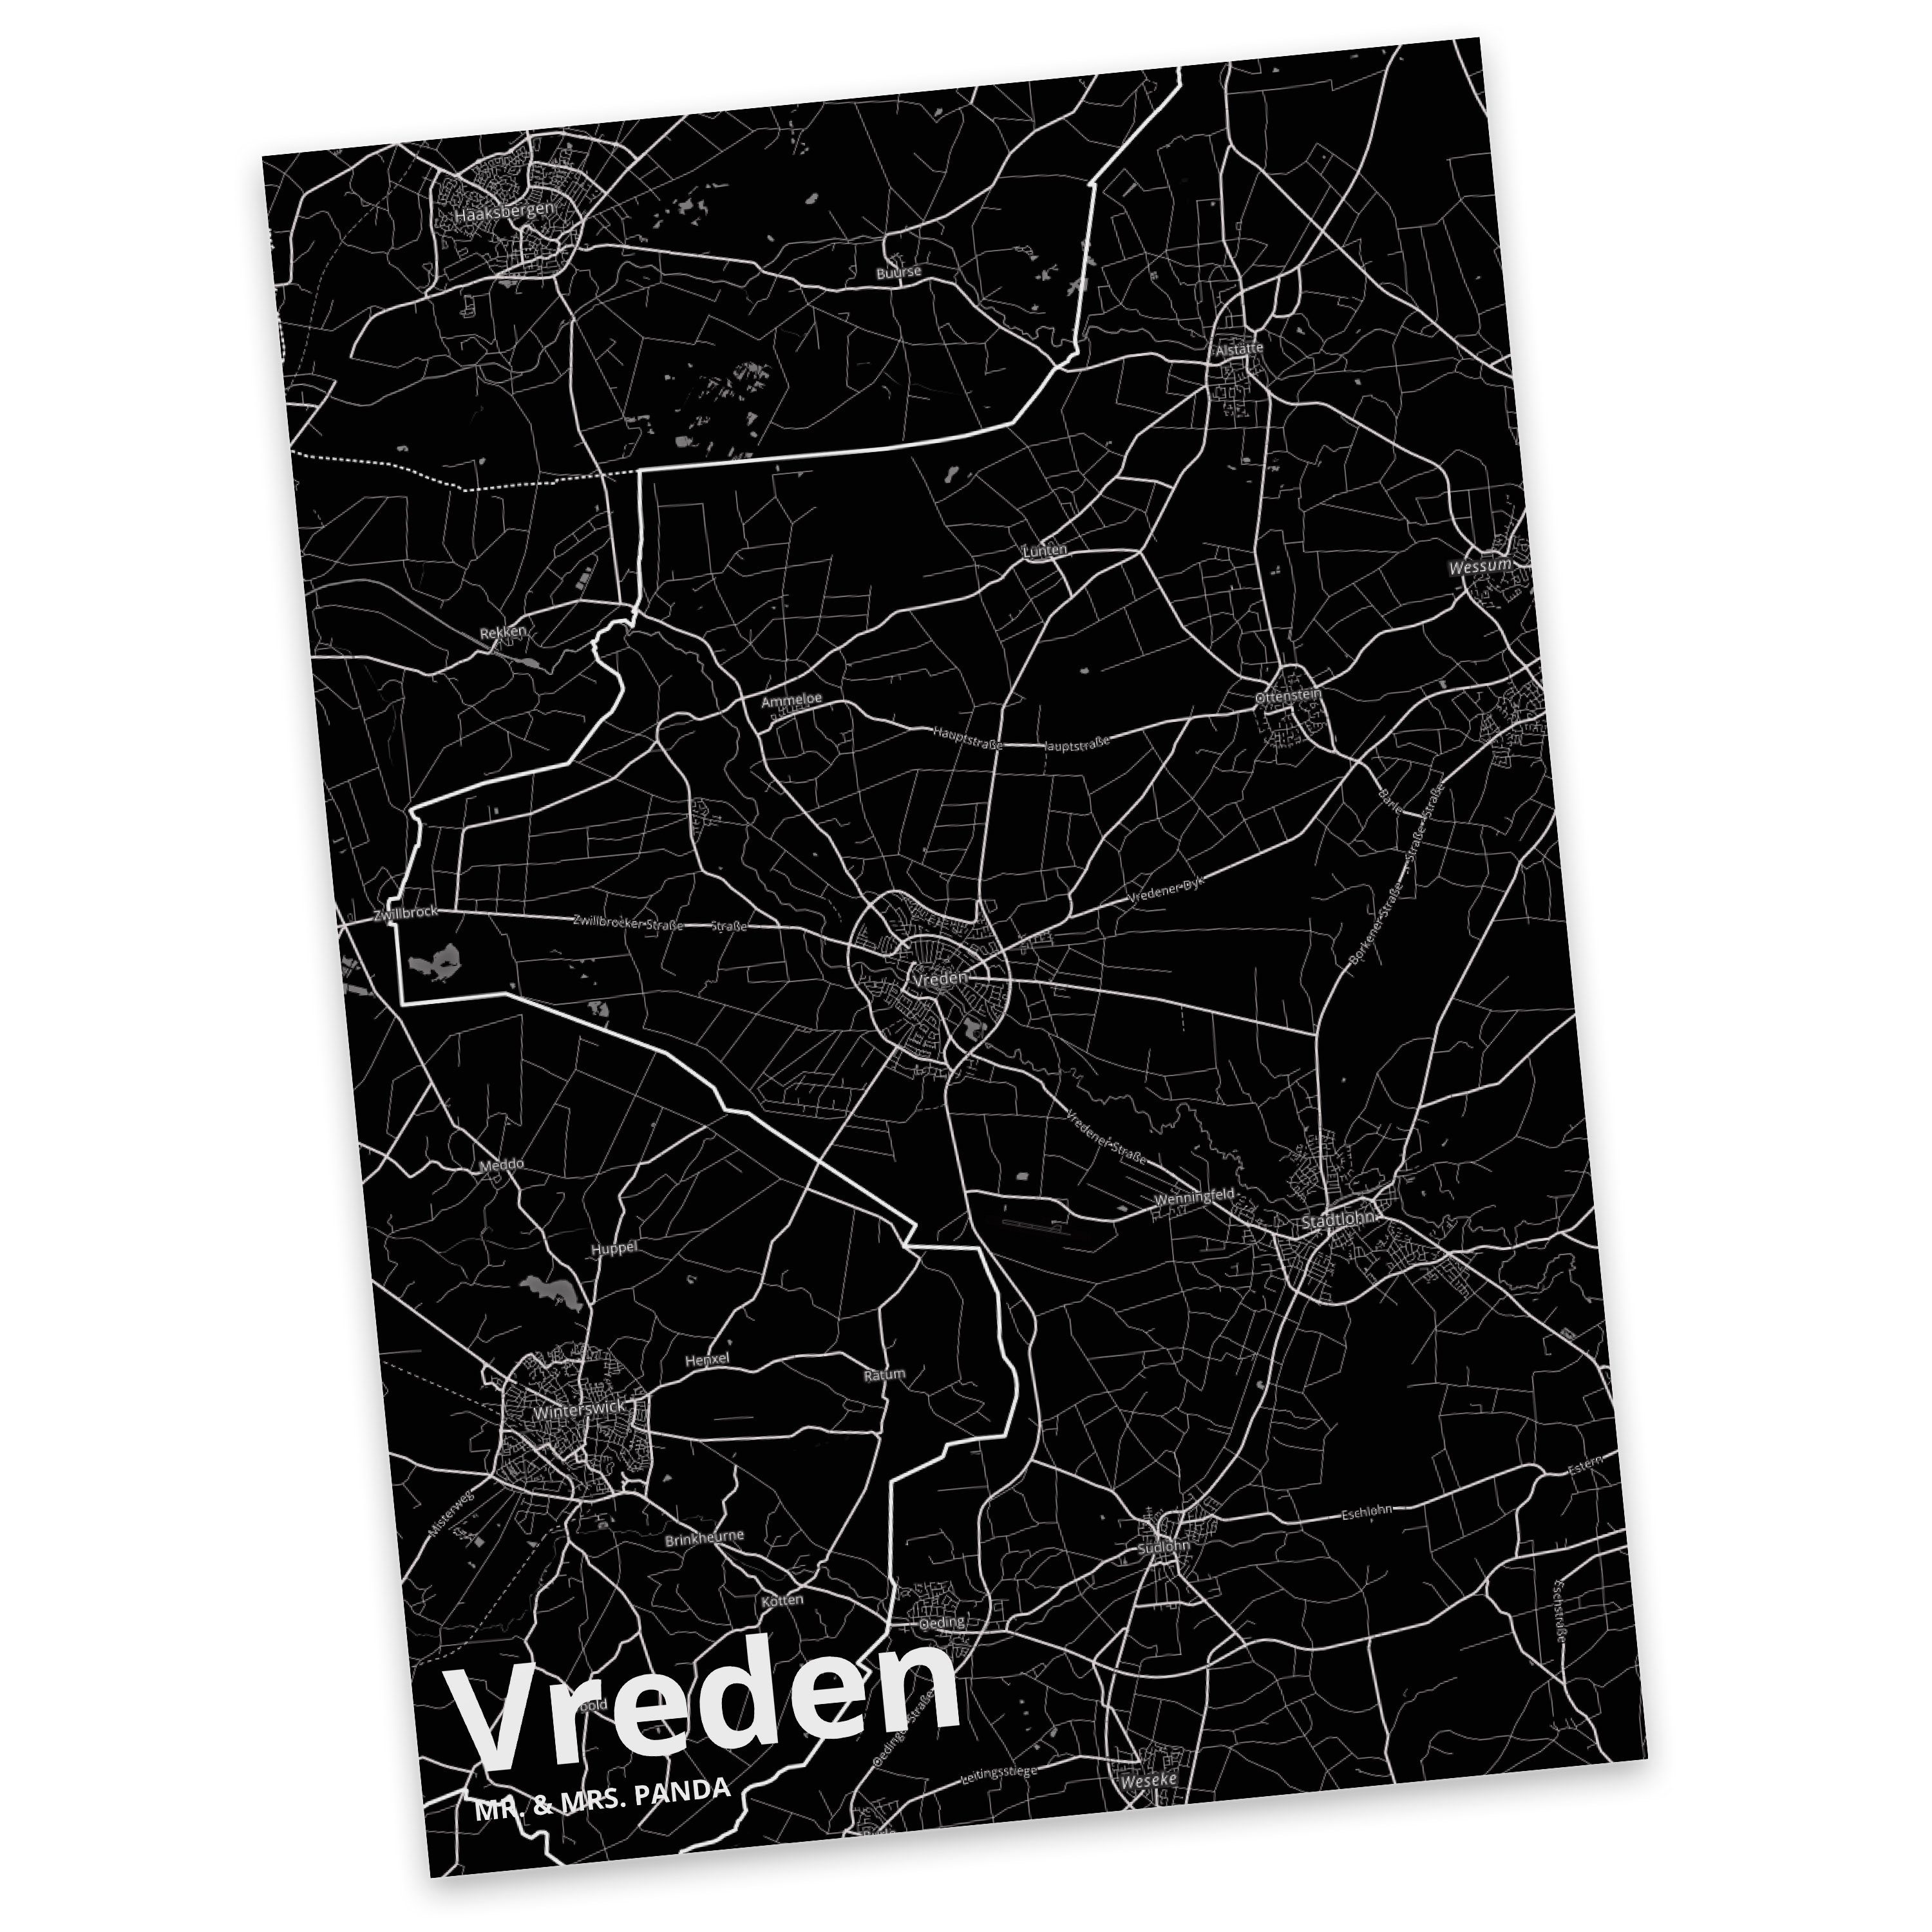 Mr. & Mrs. Panda Postkarte Vreden - Geschenk, Städte, Stadt, Einladung, Stadt Dorf Karte Landkar